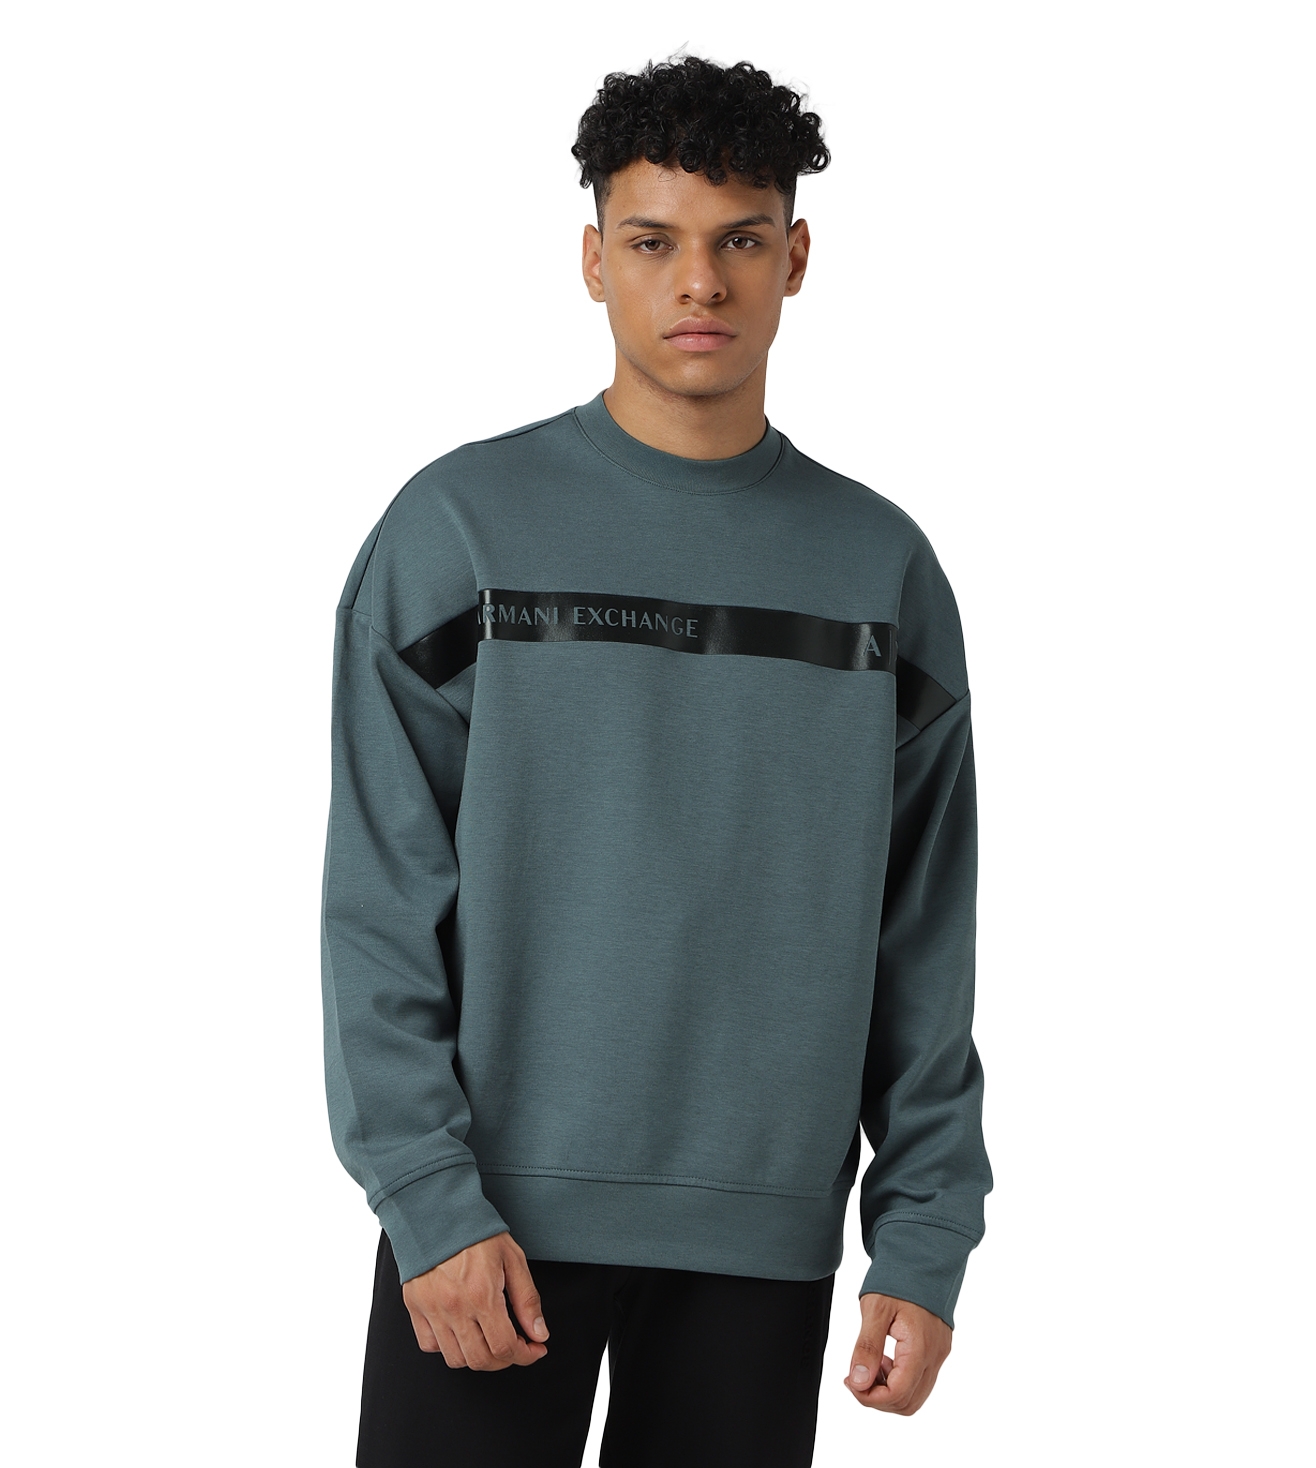 Armani Exchange Men's Sweatshirts